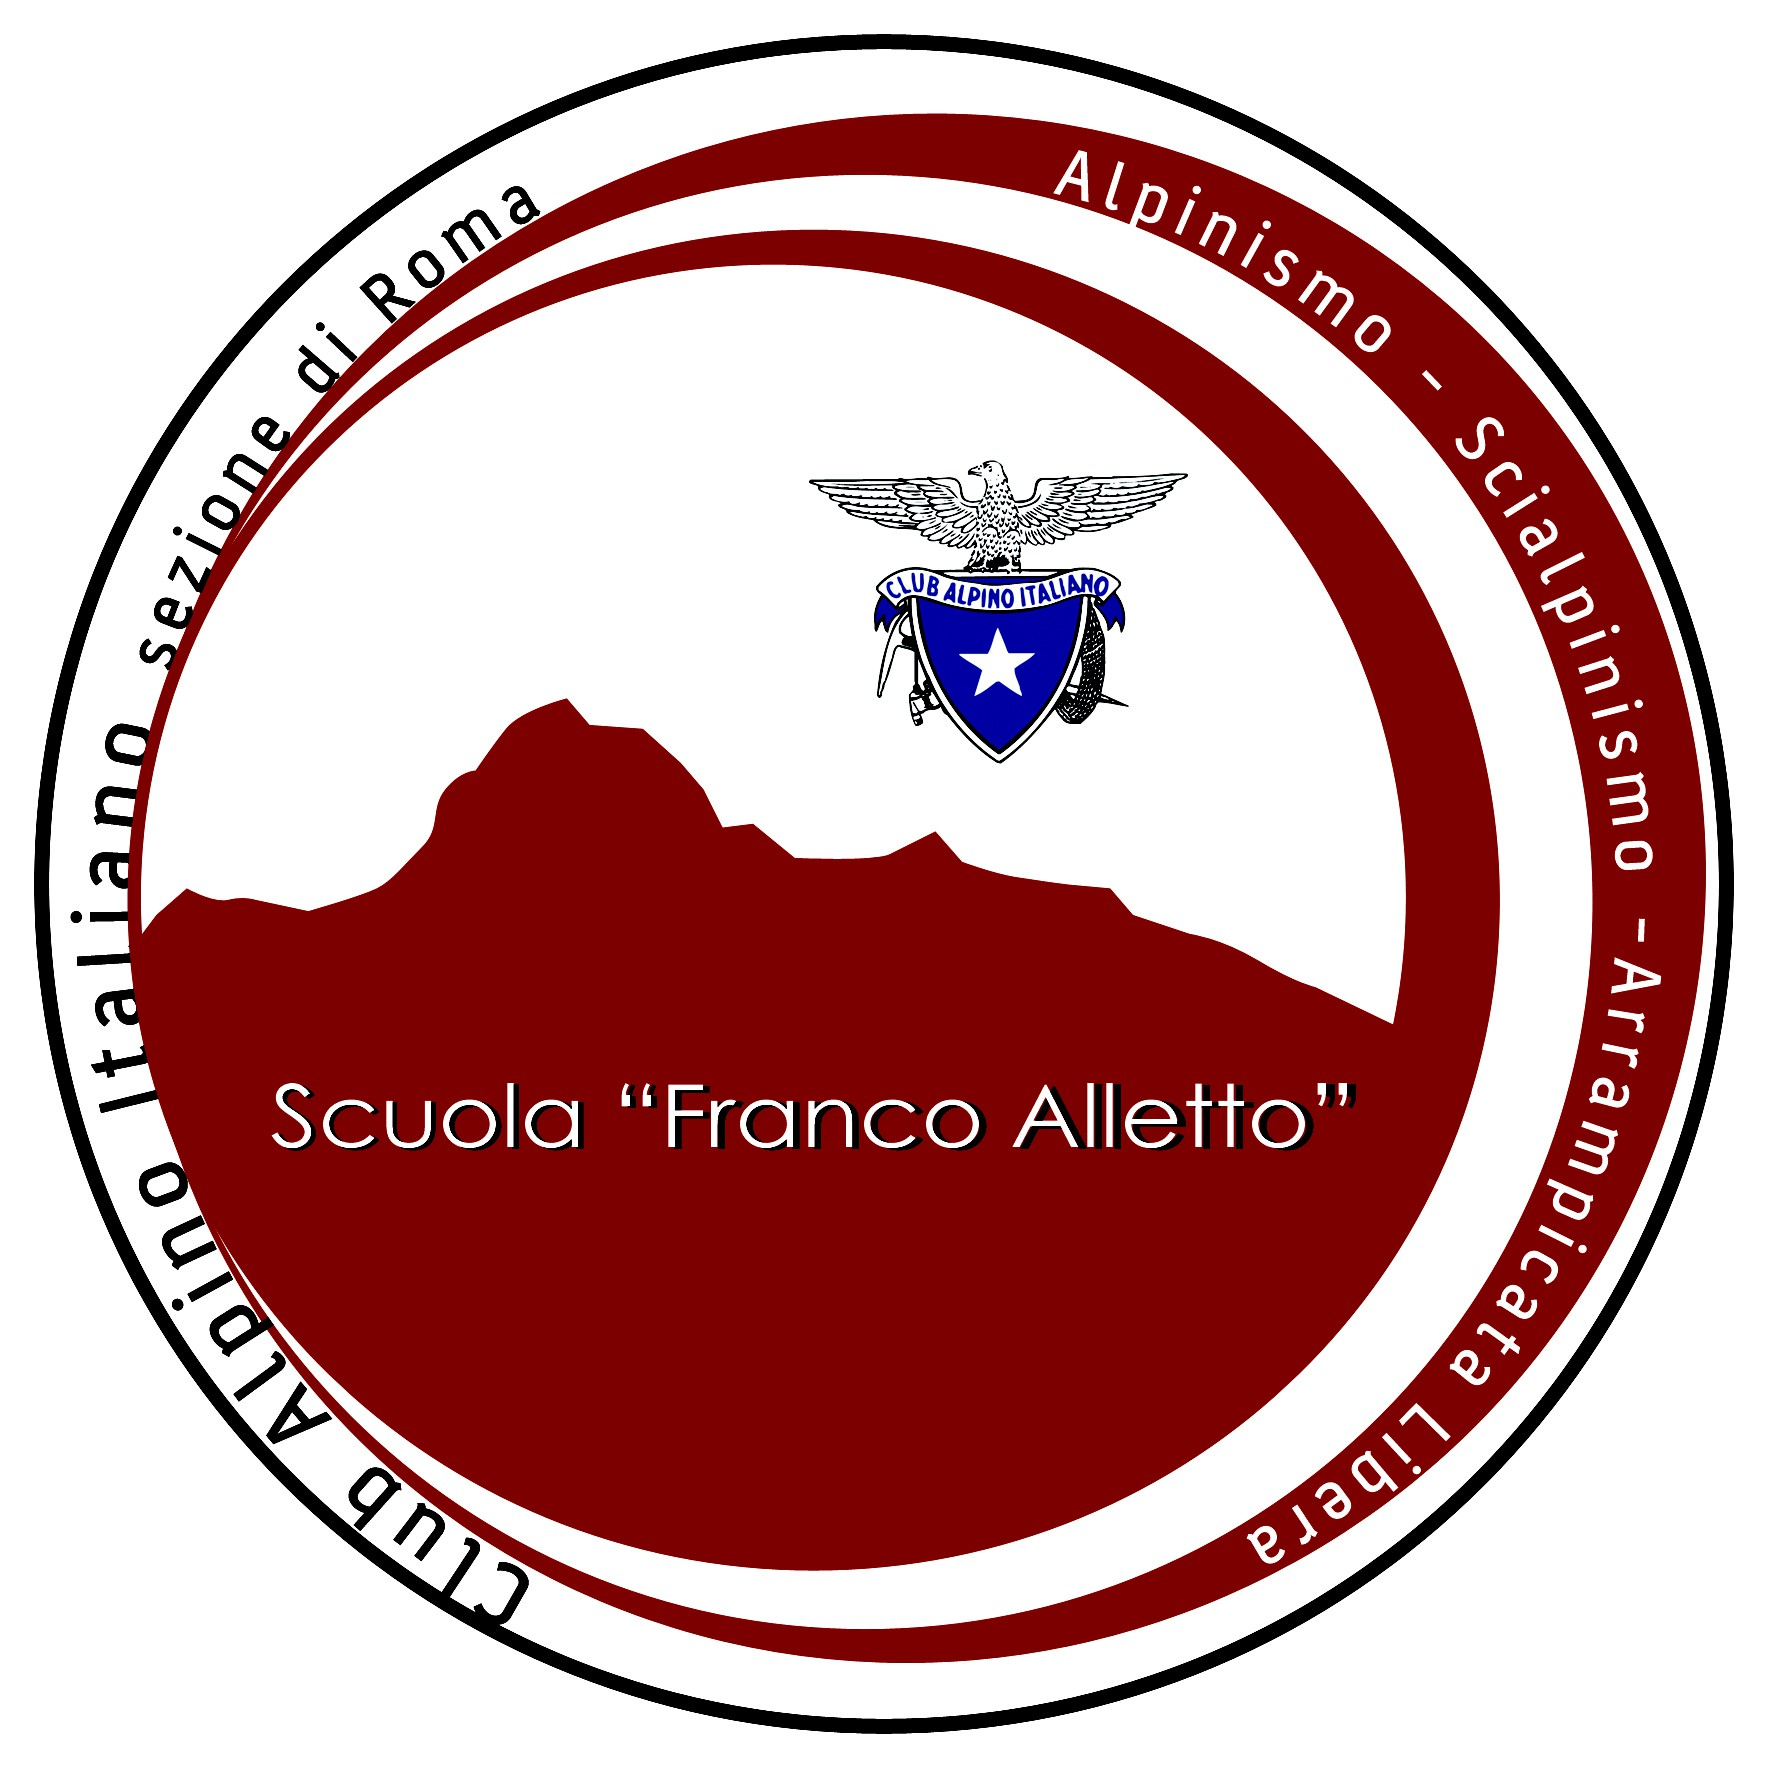 Club Alpino Italiano Sezione di Roma - Scuola FRANCO ALLETTO Alpinismo, Scialpinismo e Arrampicata Libera www.scuolafrancoalletto.